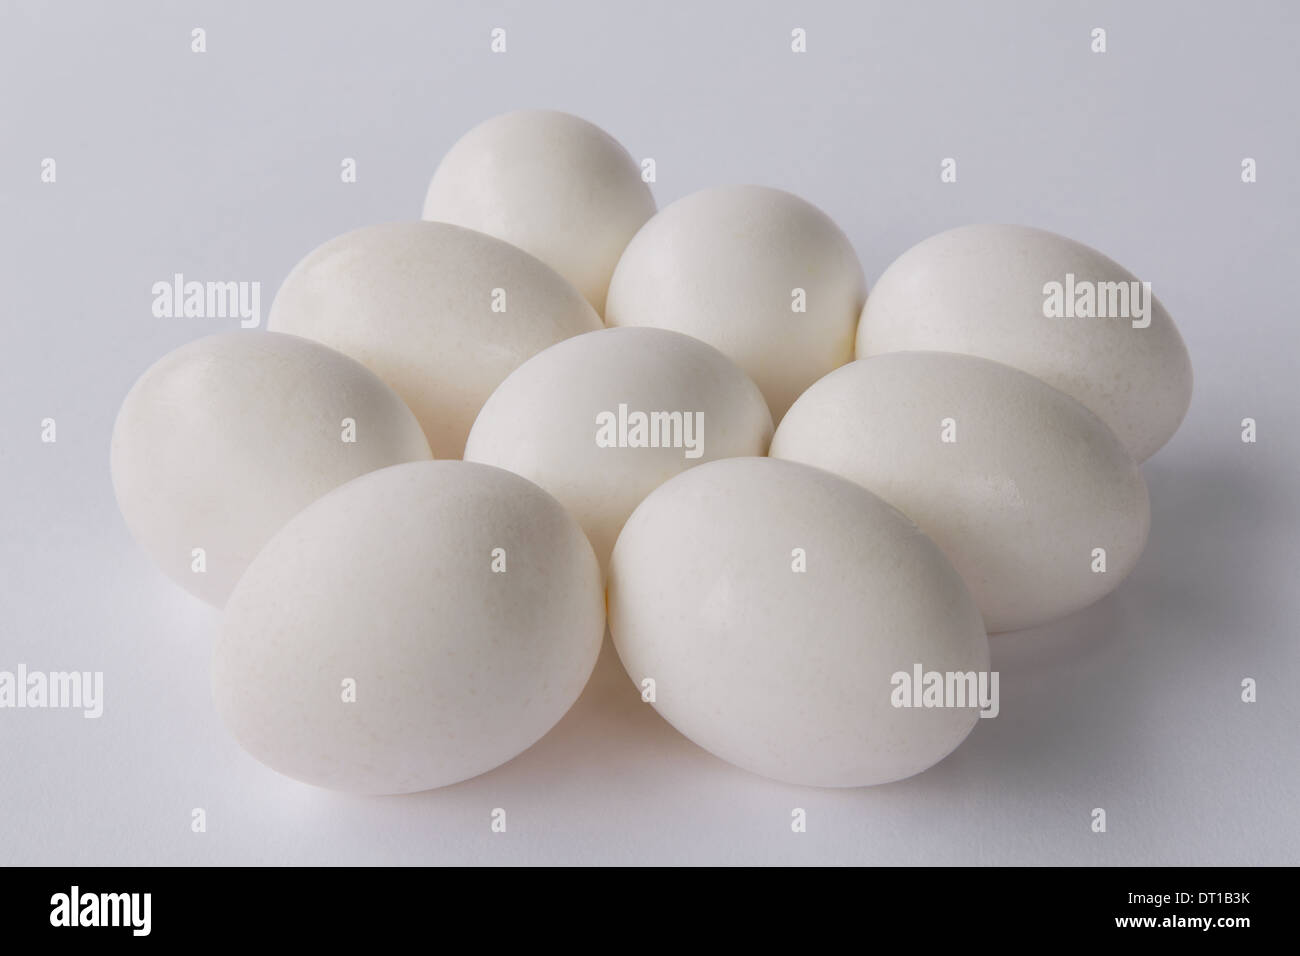 Neuf œufs biologiques gamme libre avec coquilles blanches Banque D'Images